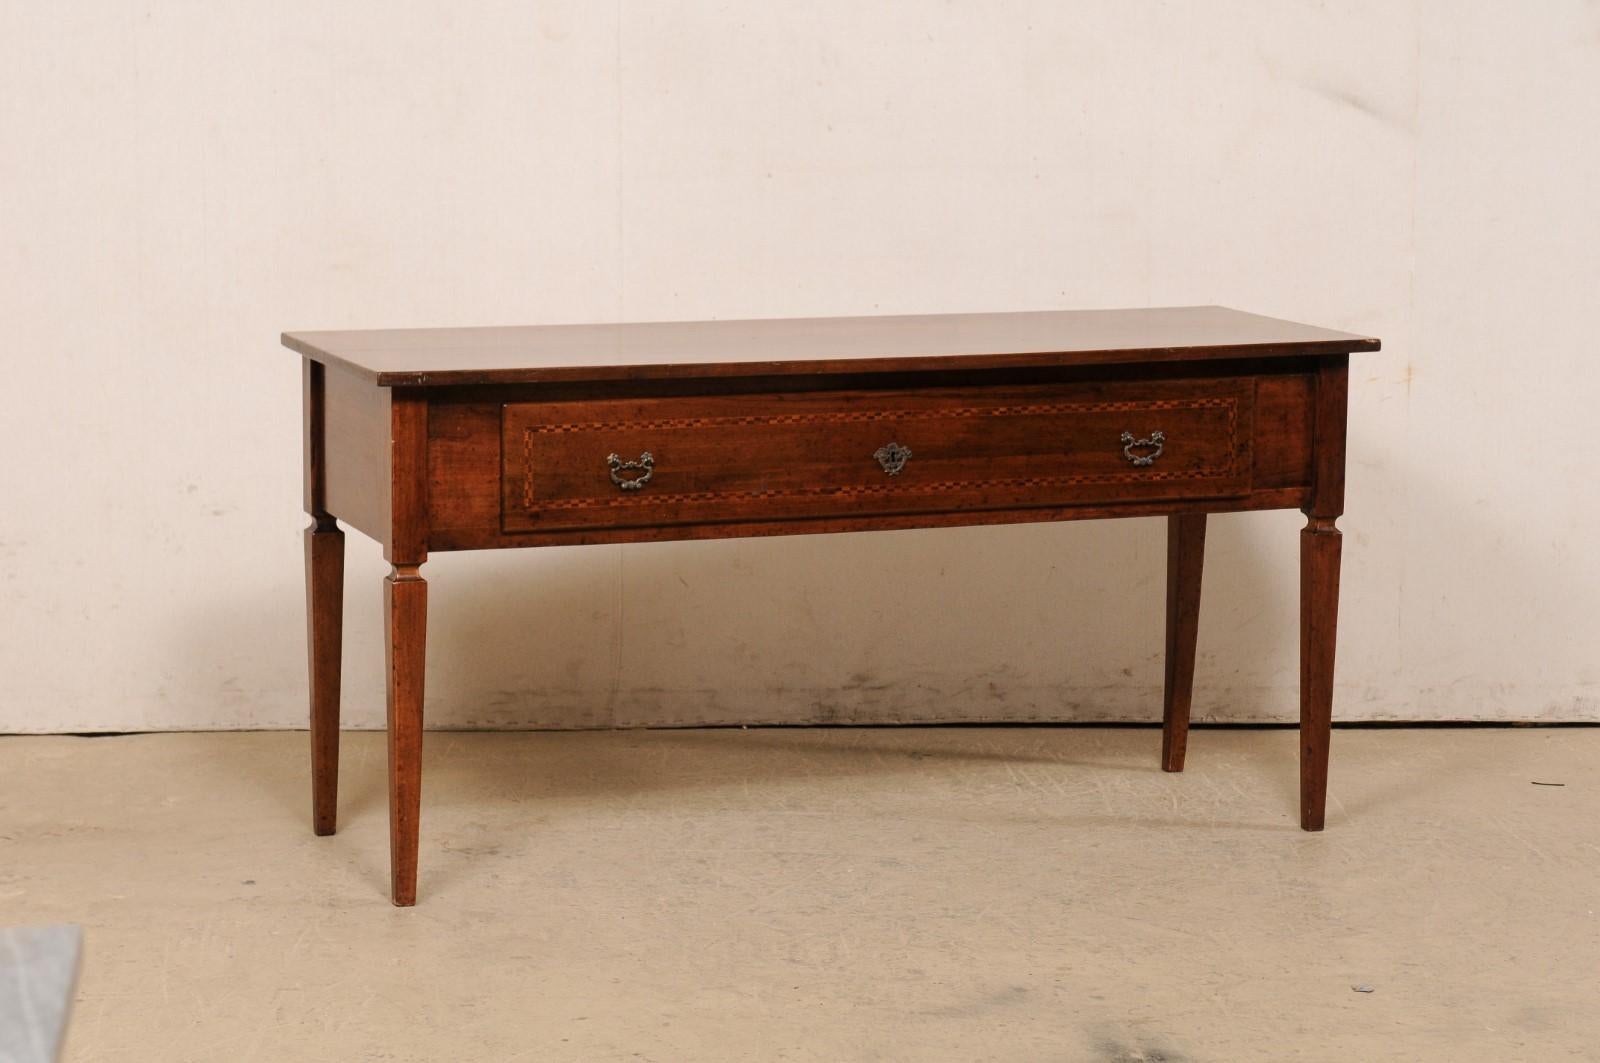 Une table console italienne en bois avec tiroir du milieu du 20e siècle. Cette table italienne du milieu du siècle mesure environ 1,80 m de long. Son plateau rectangulaire est surmonté d'un tablier profond qui abrite un grand tiroir unique (équipé